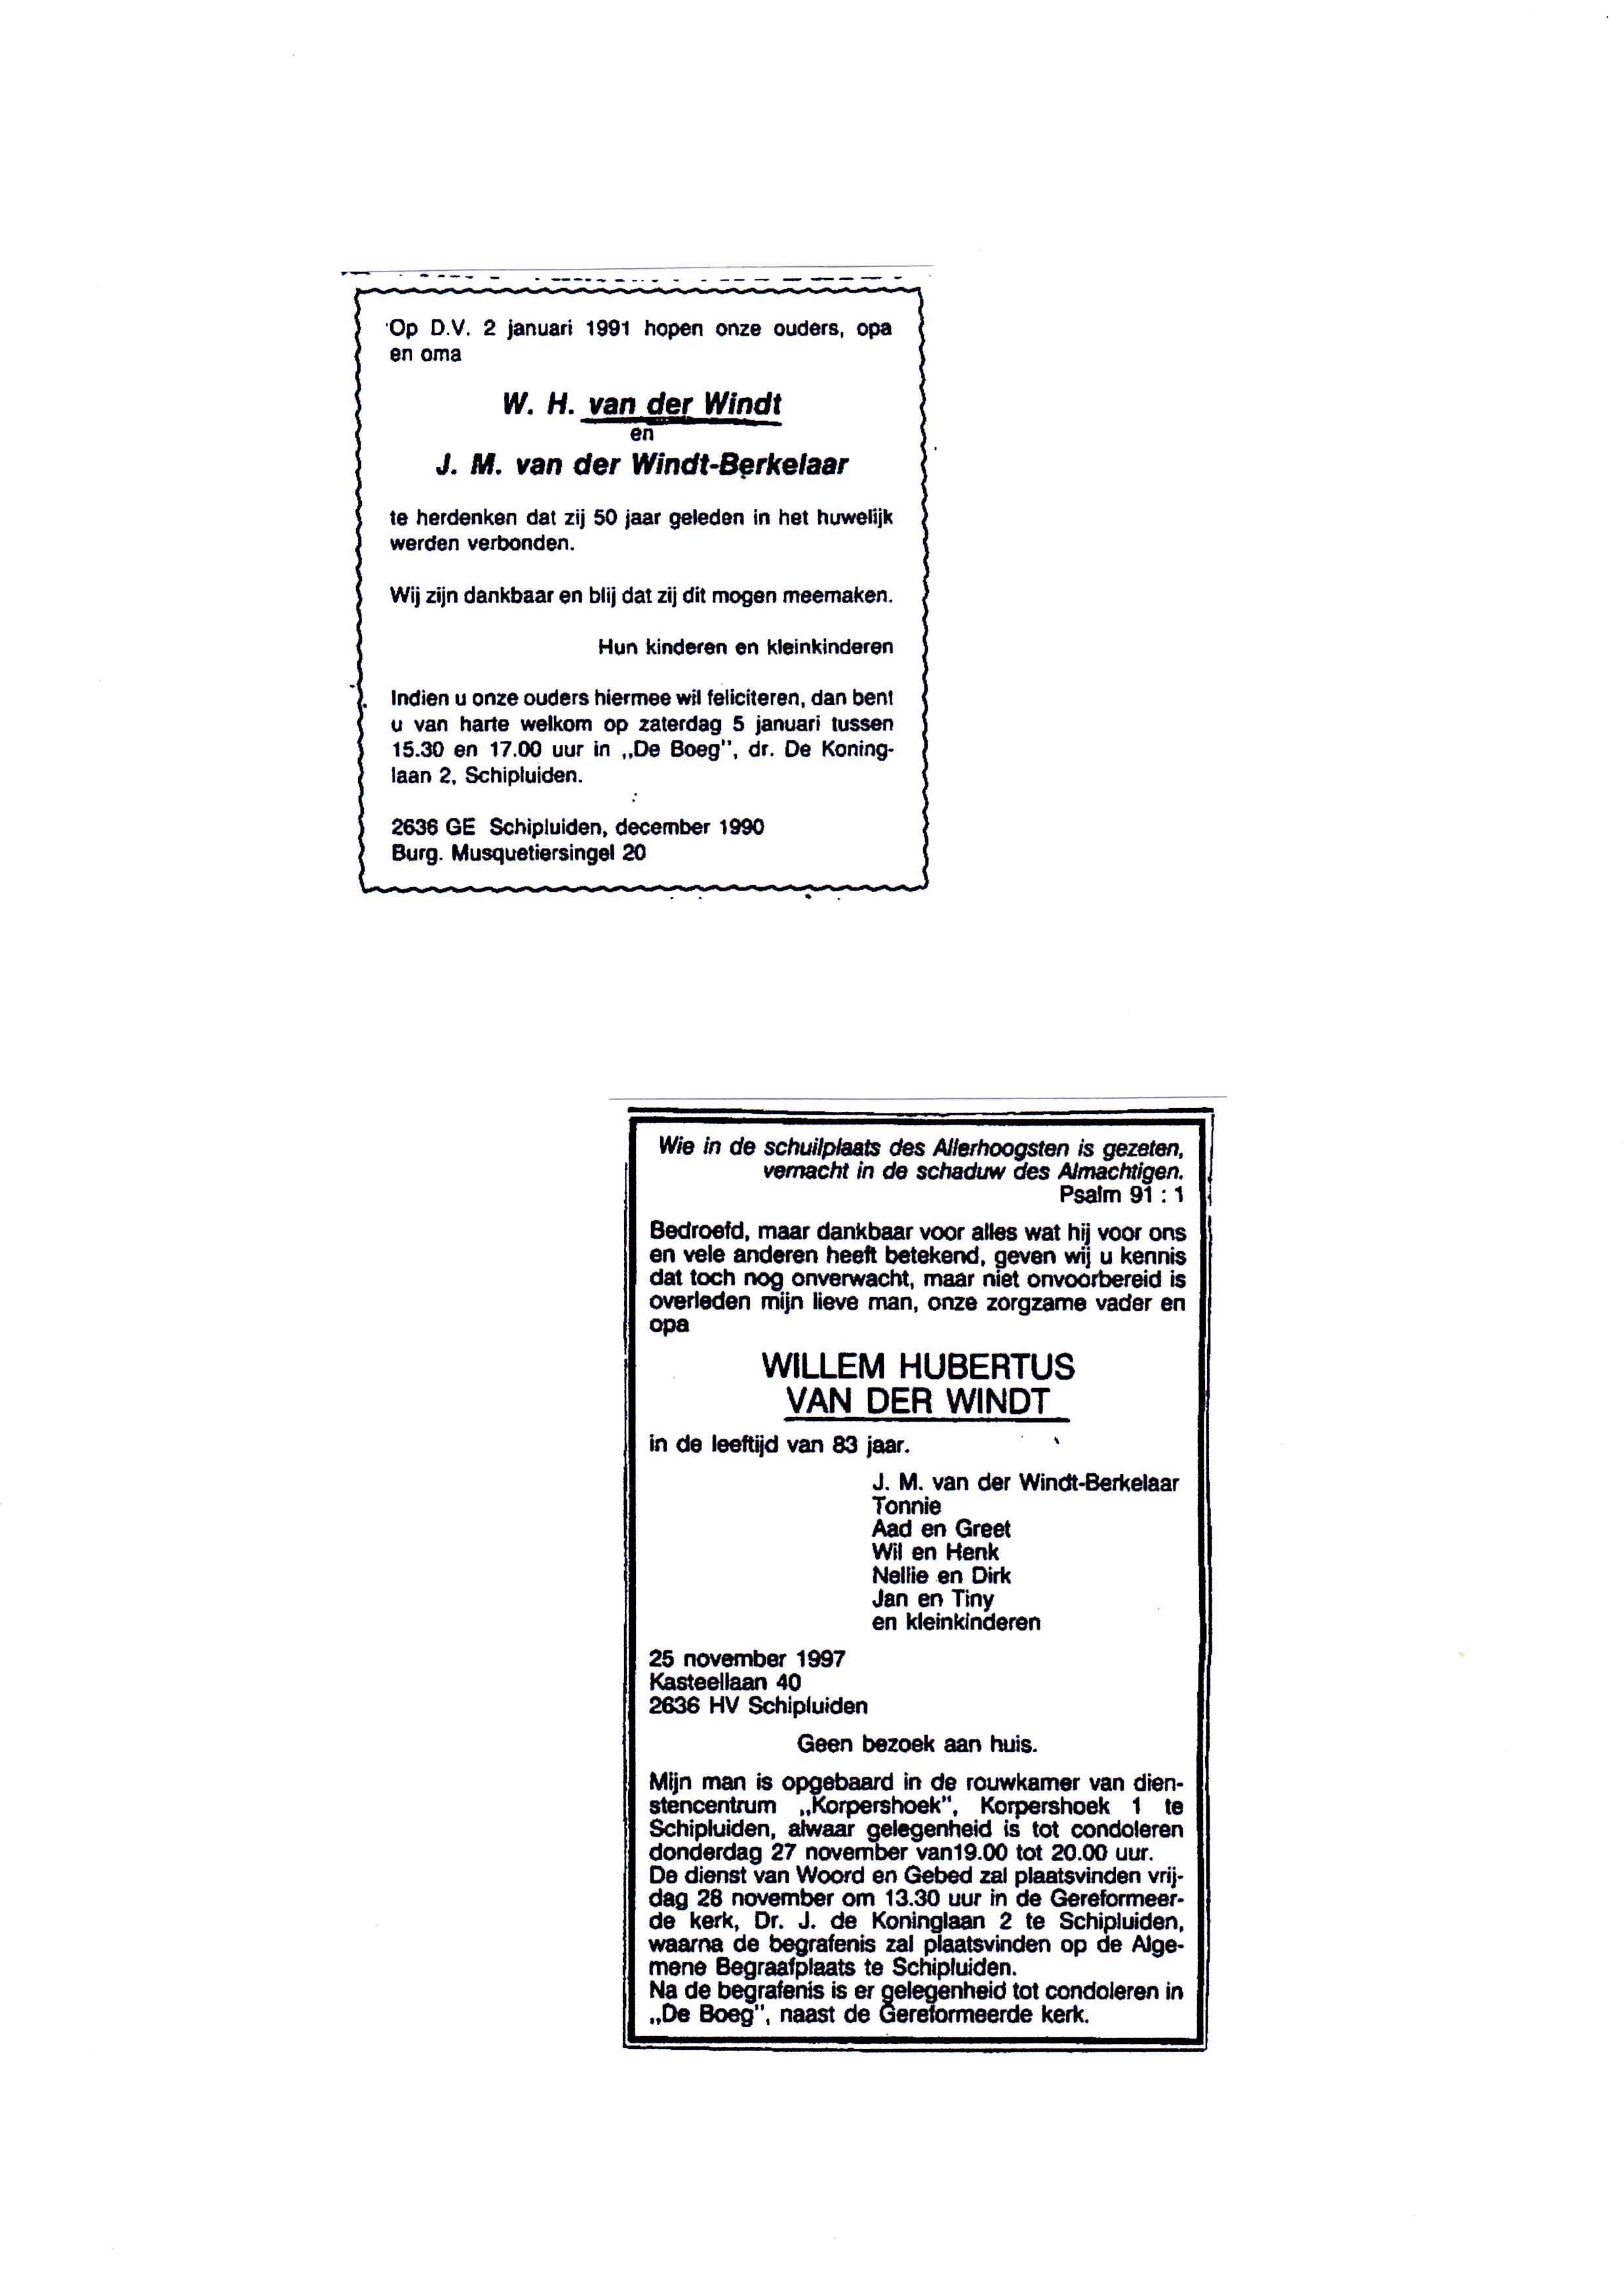 Advertenties. 1991-01-02 50 jarig huwelijk W.H.van der Windt en J.M.Berkelaar en 1997-11-25 Overlijden W.H.van der Windt